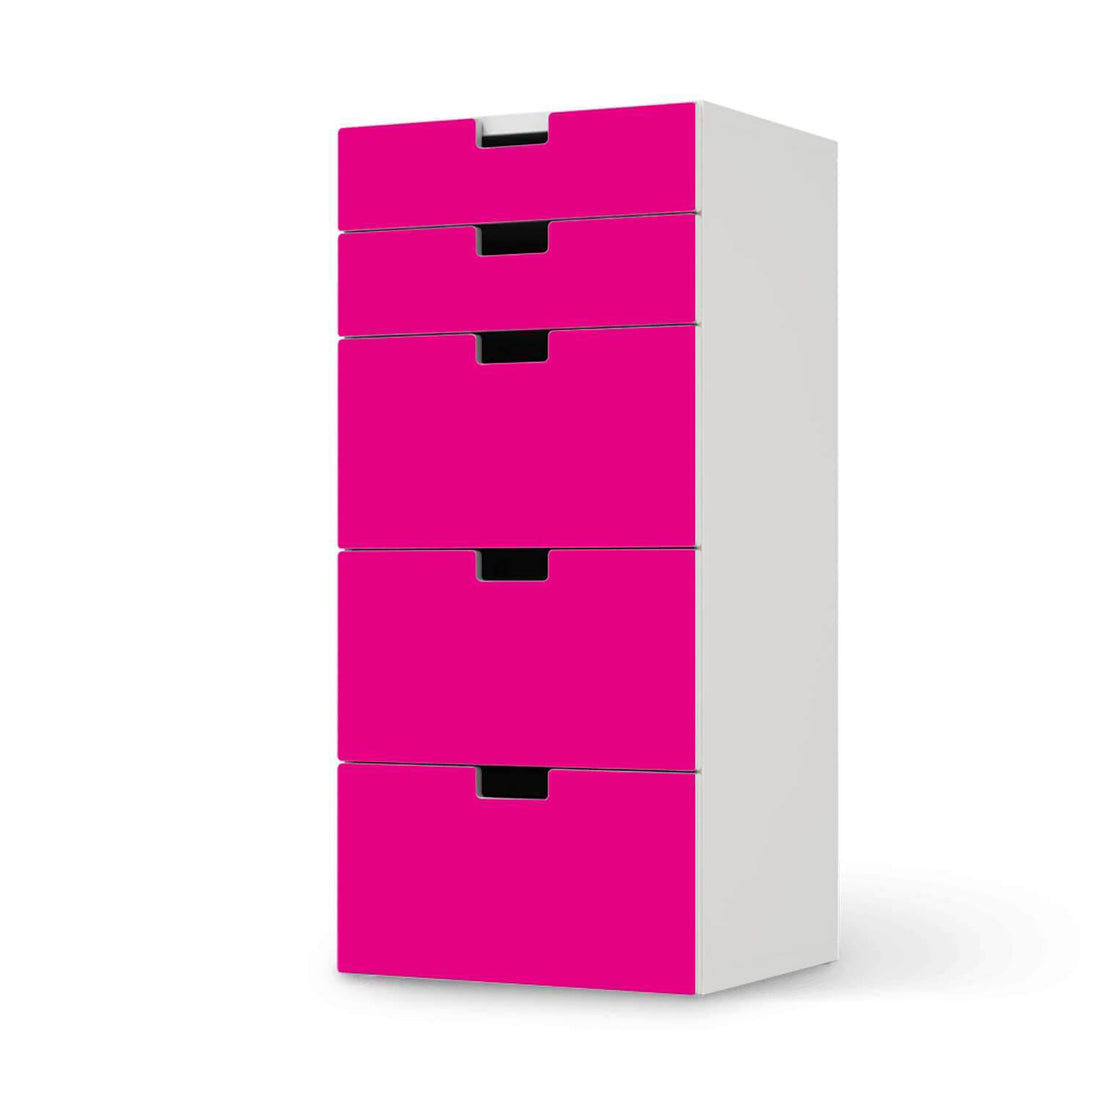 Möbel Klebefolie Pink Dark - IKEA Stuva Kommode - 5 Schubladen  - weiss